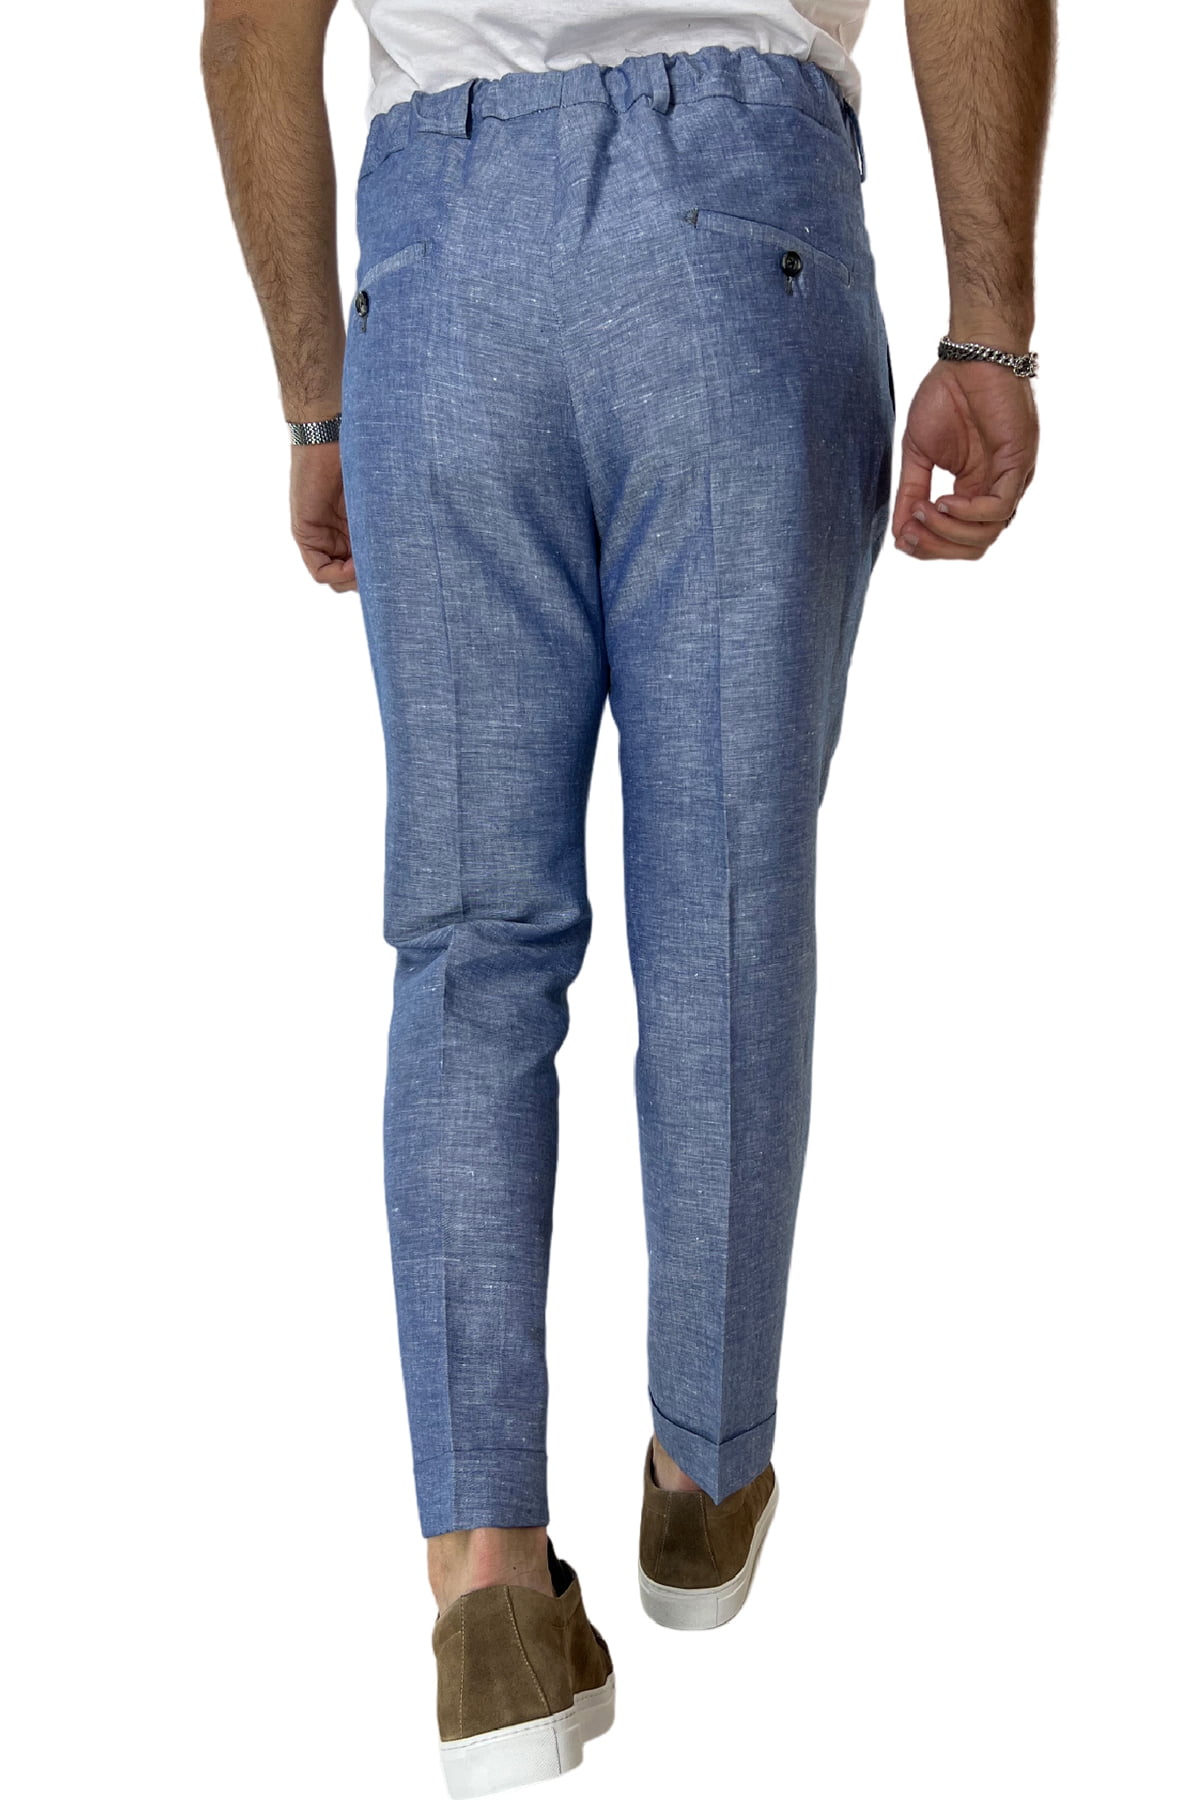 Pantalaccio uomo color denim in lino e cotone tasca america con doppia pence e laccio in vita risvolto 4cm